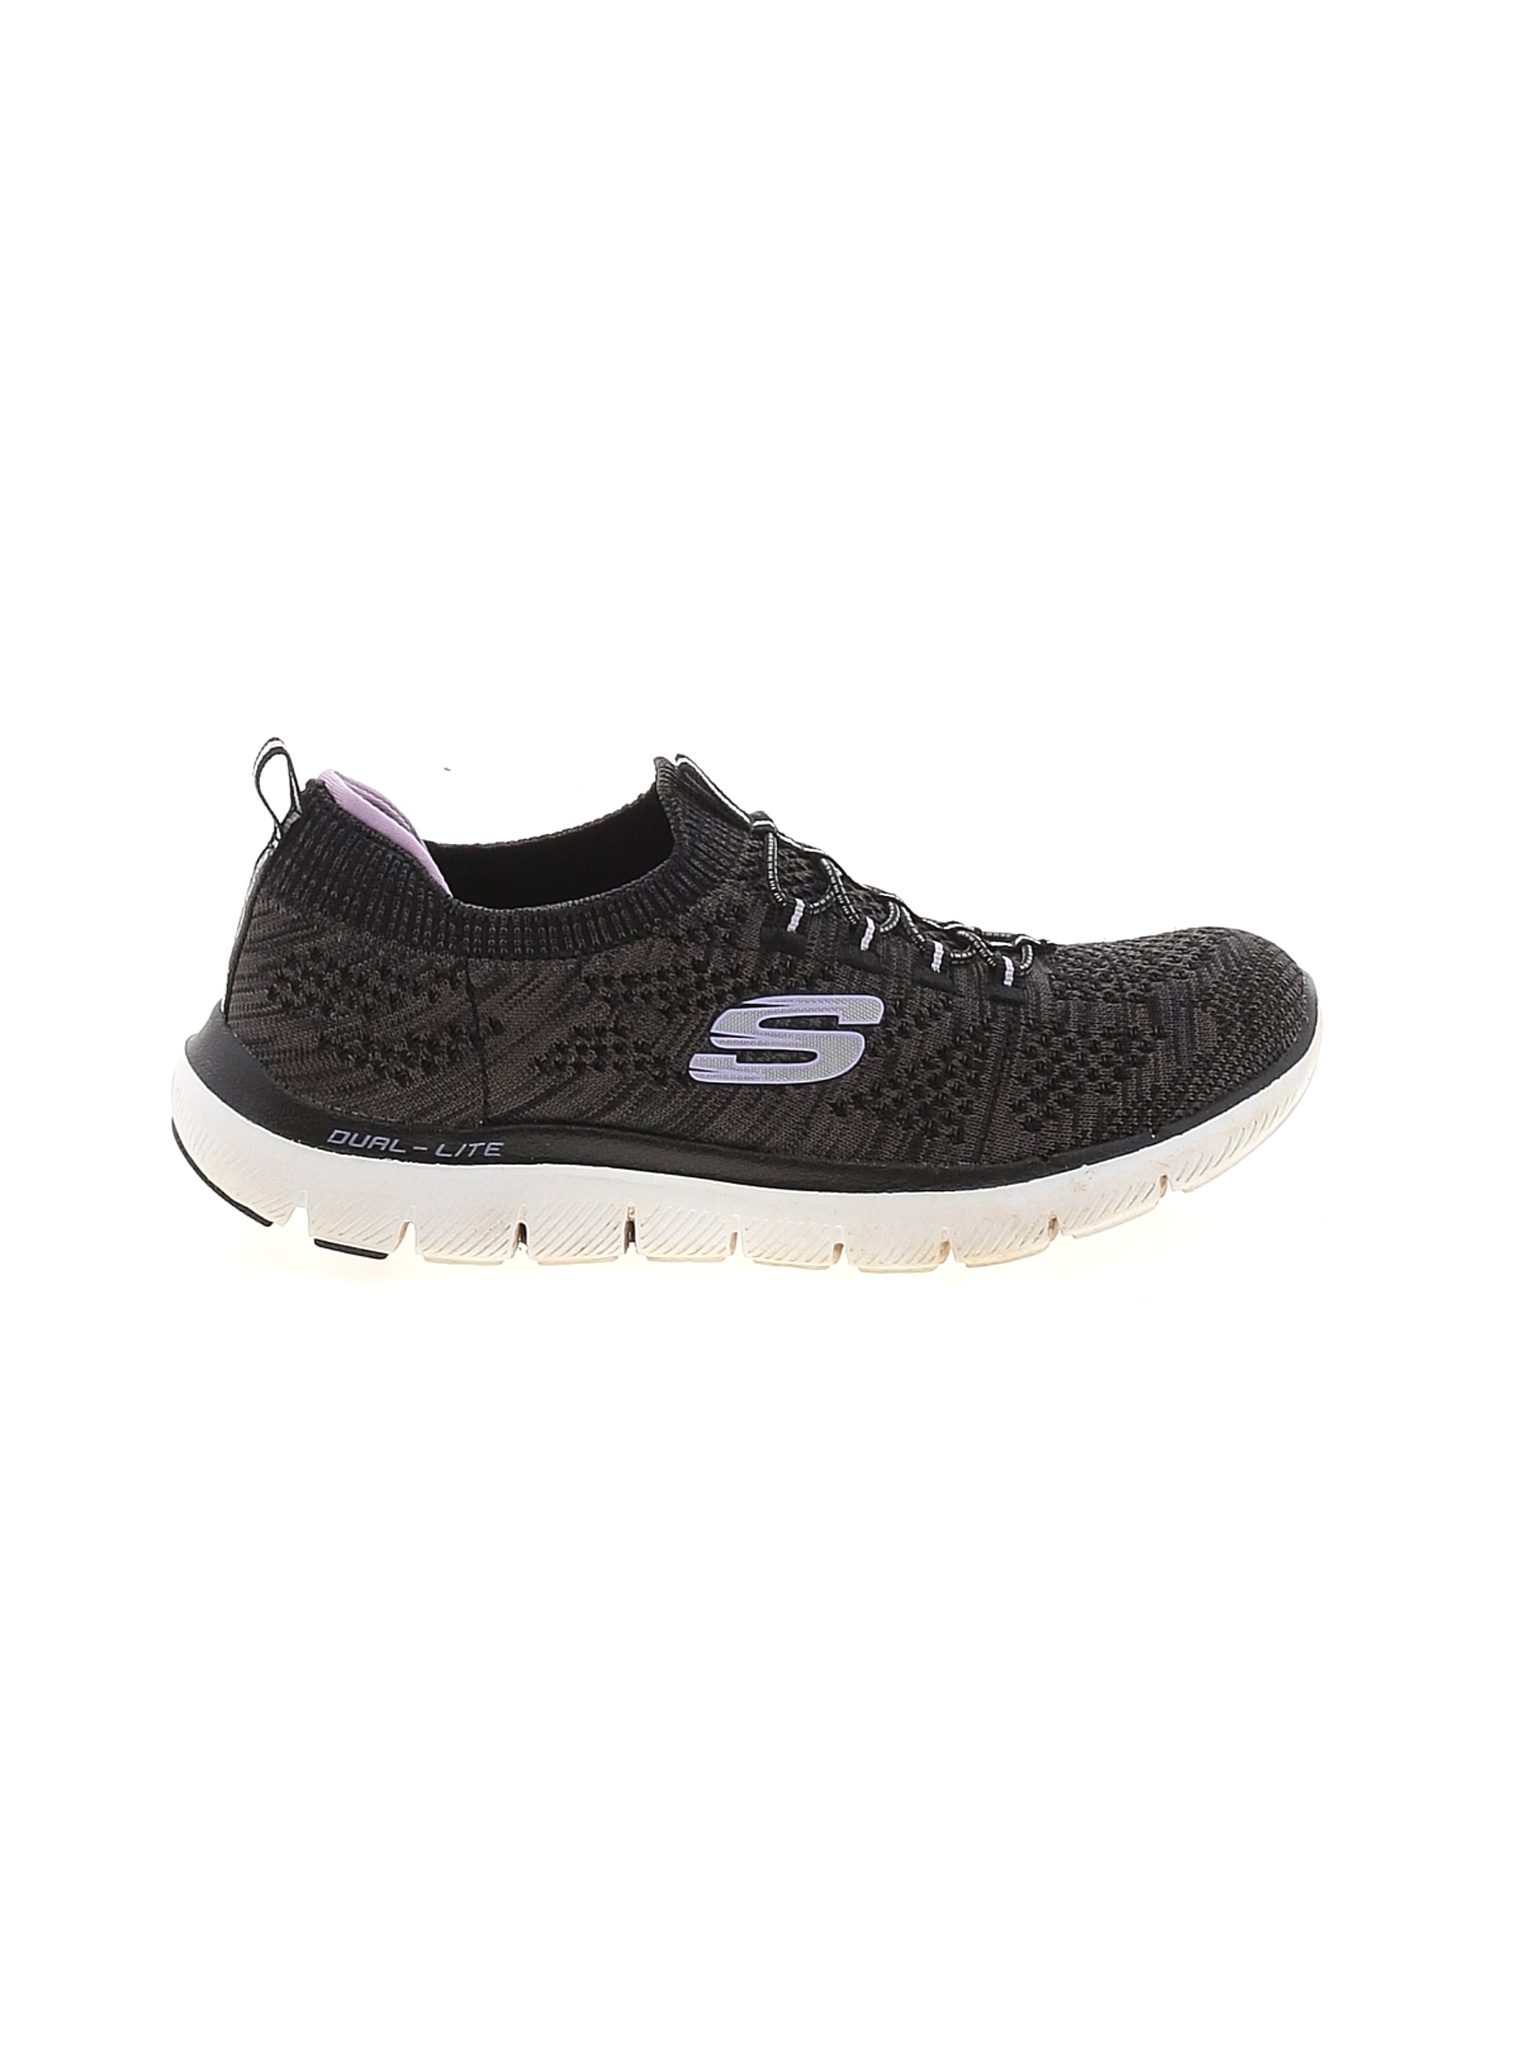 Skechers Women Black Sneakers US 7 | eBay